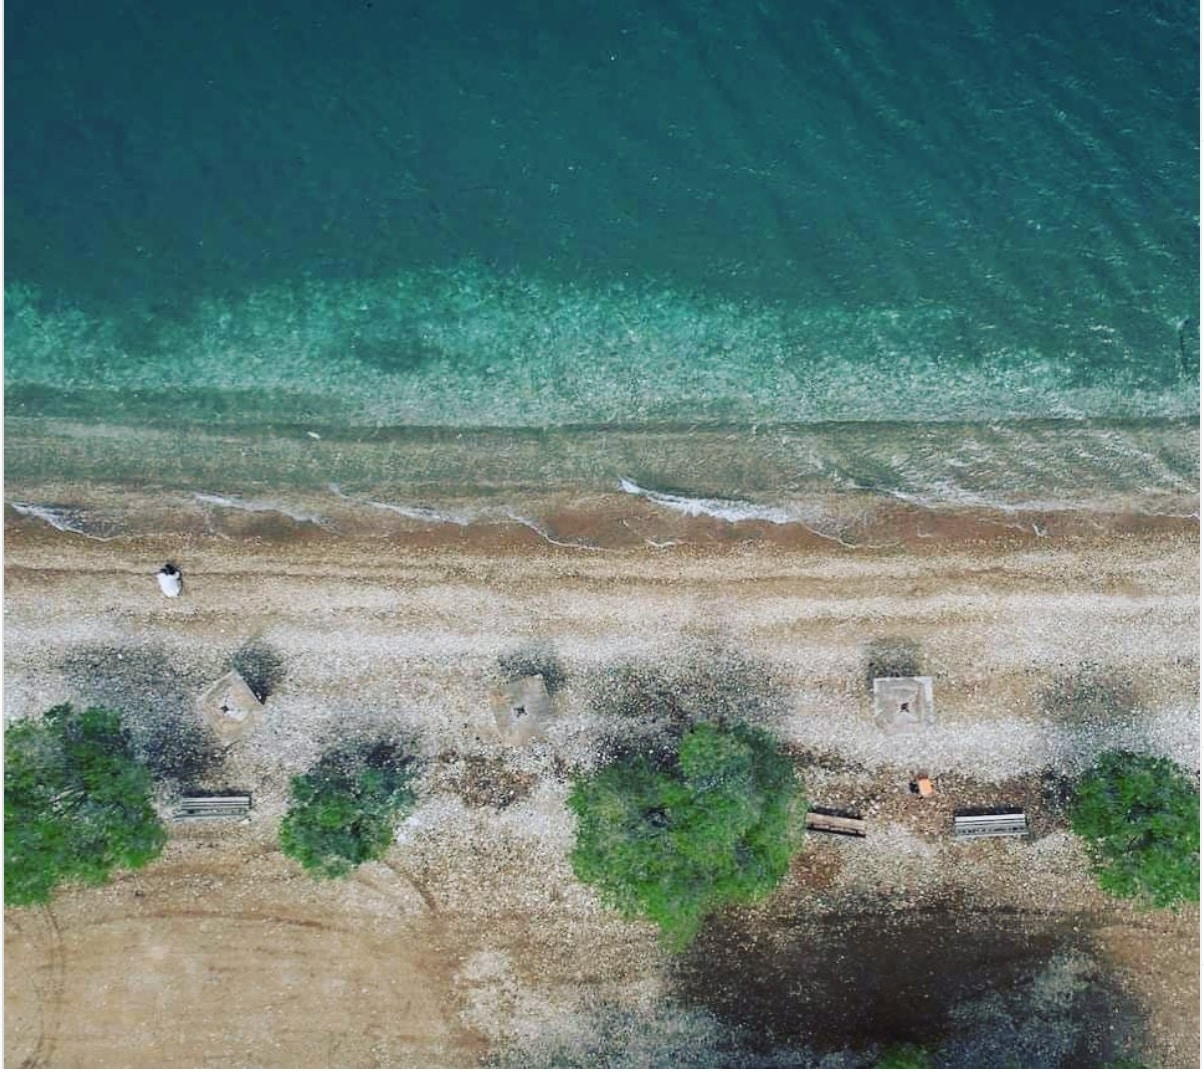 Μπάνιο σε μια από τις ήσυχες παραλίες της Αττικής με φυσική σκιά